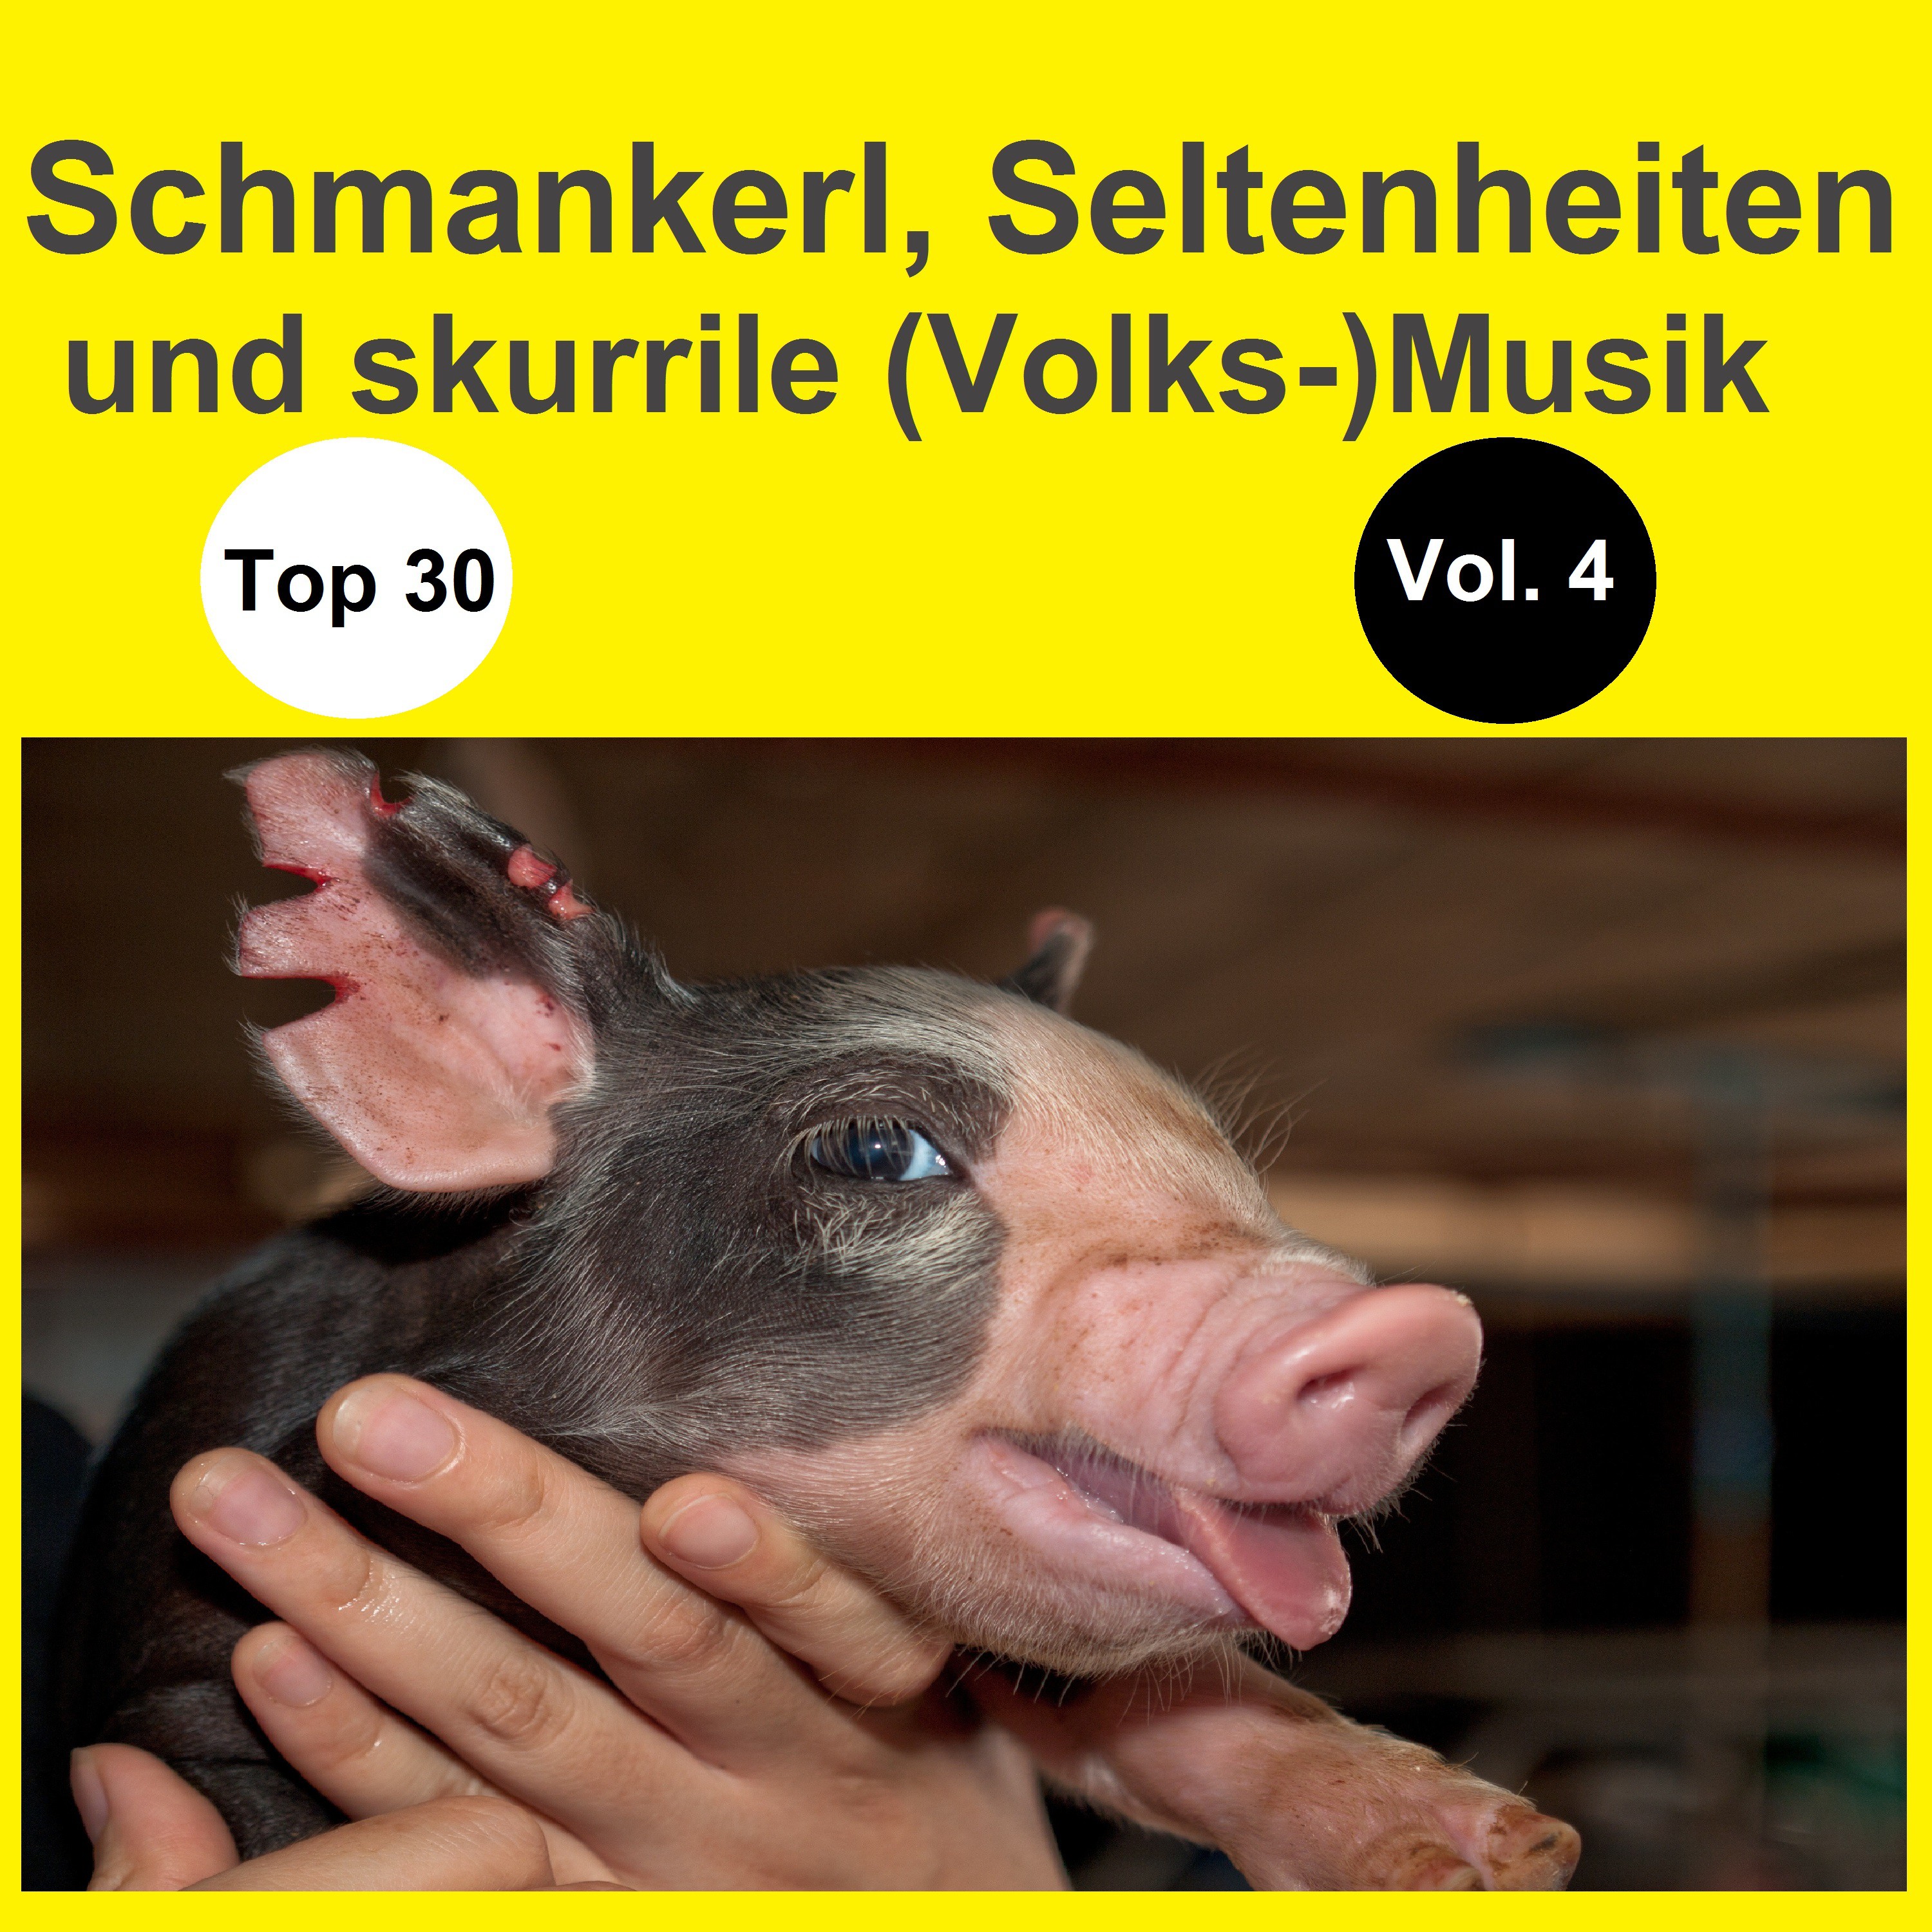 Top 30: Schmankerl, Seltenheiten und skurrile (Volks-)Musik, Vol. 4